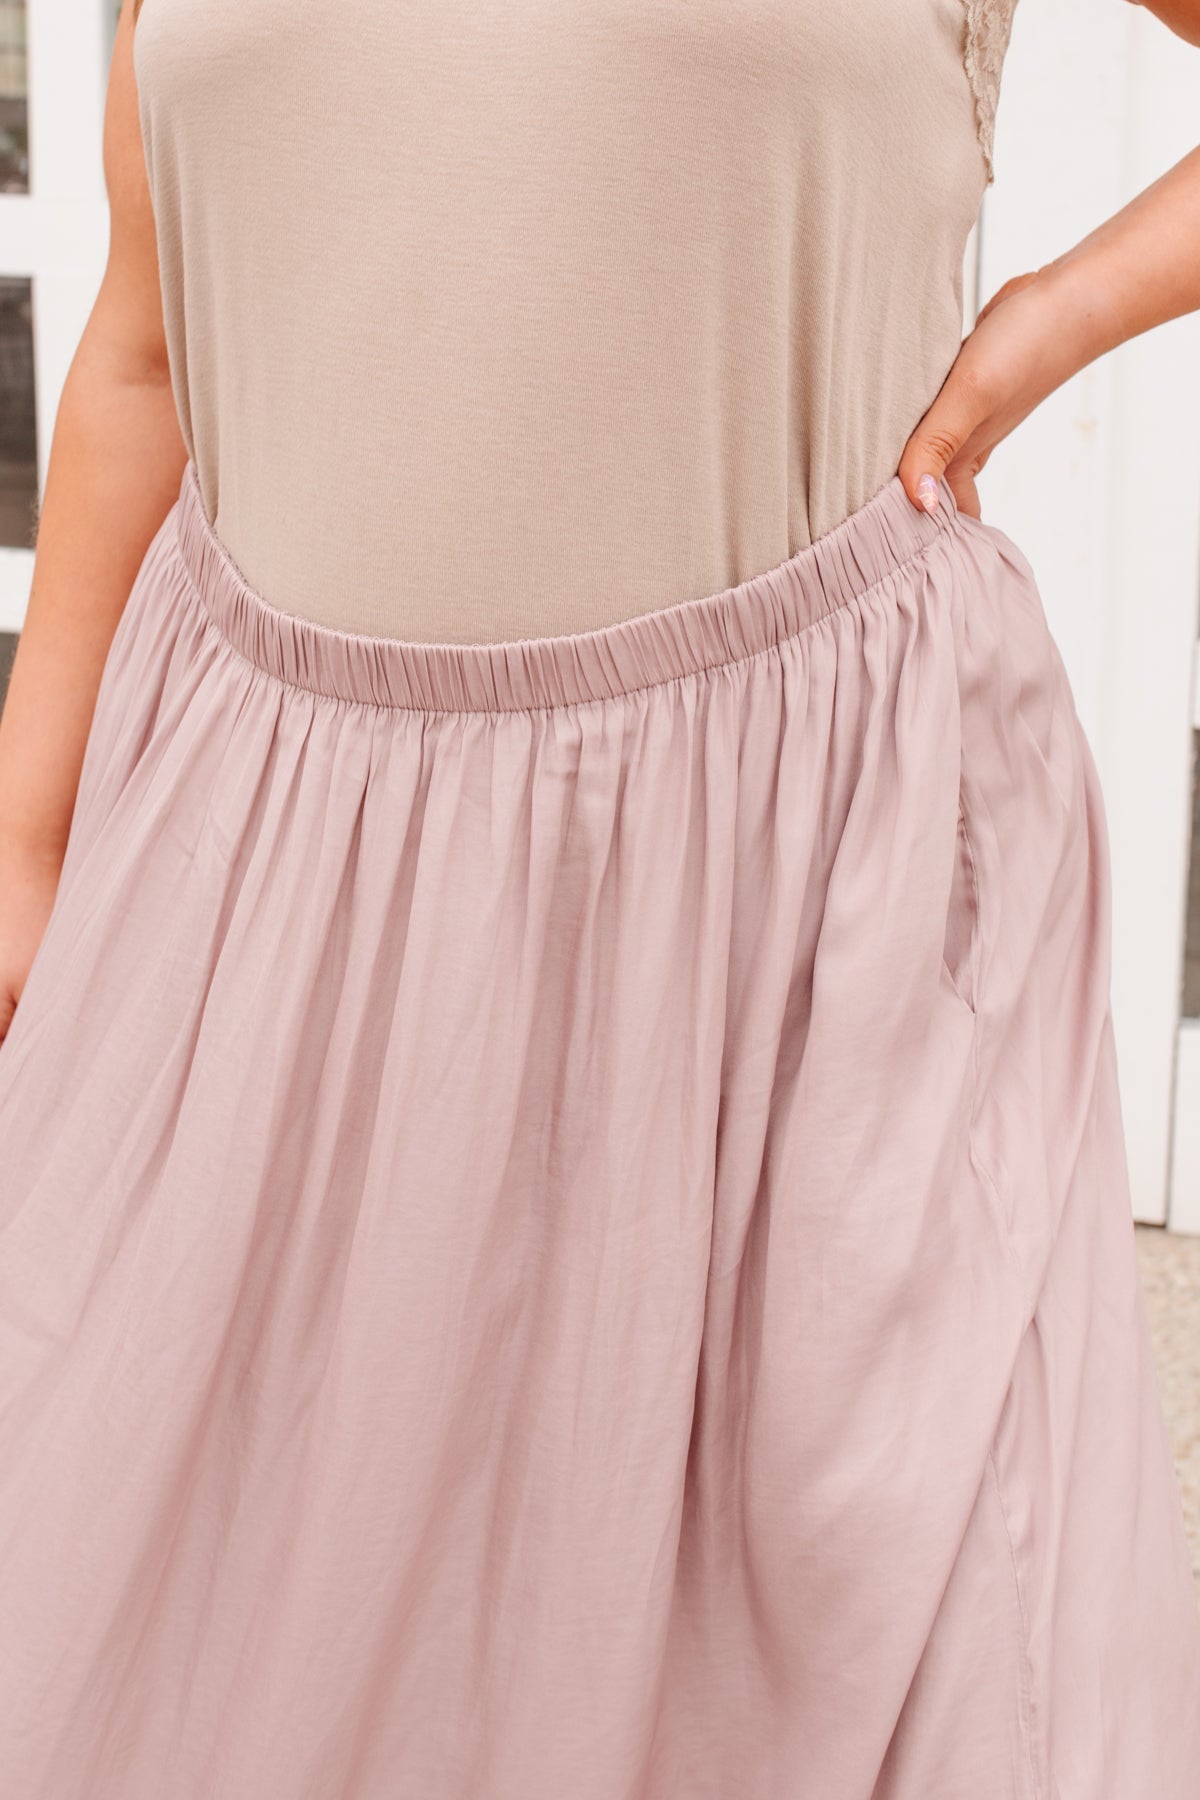 Get Away Maxi Skirt In Mauve (Online Exclusive)